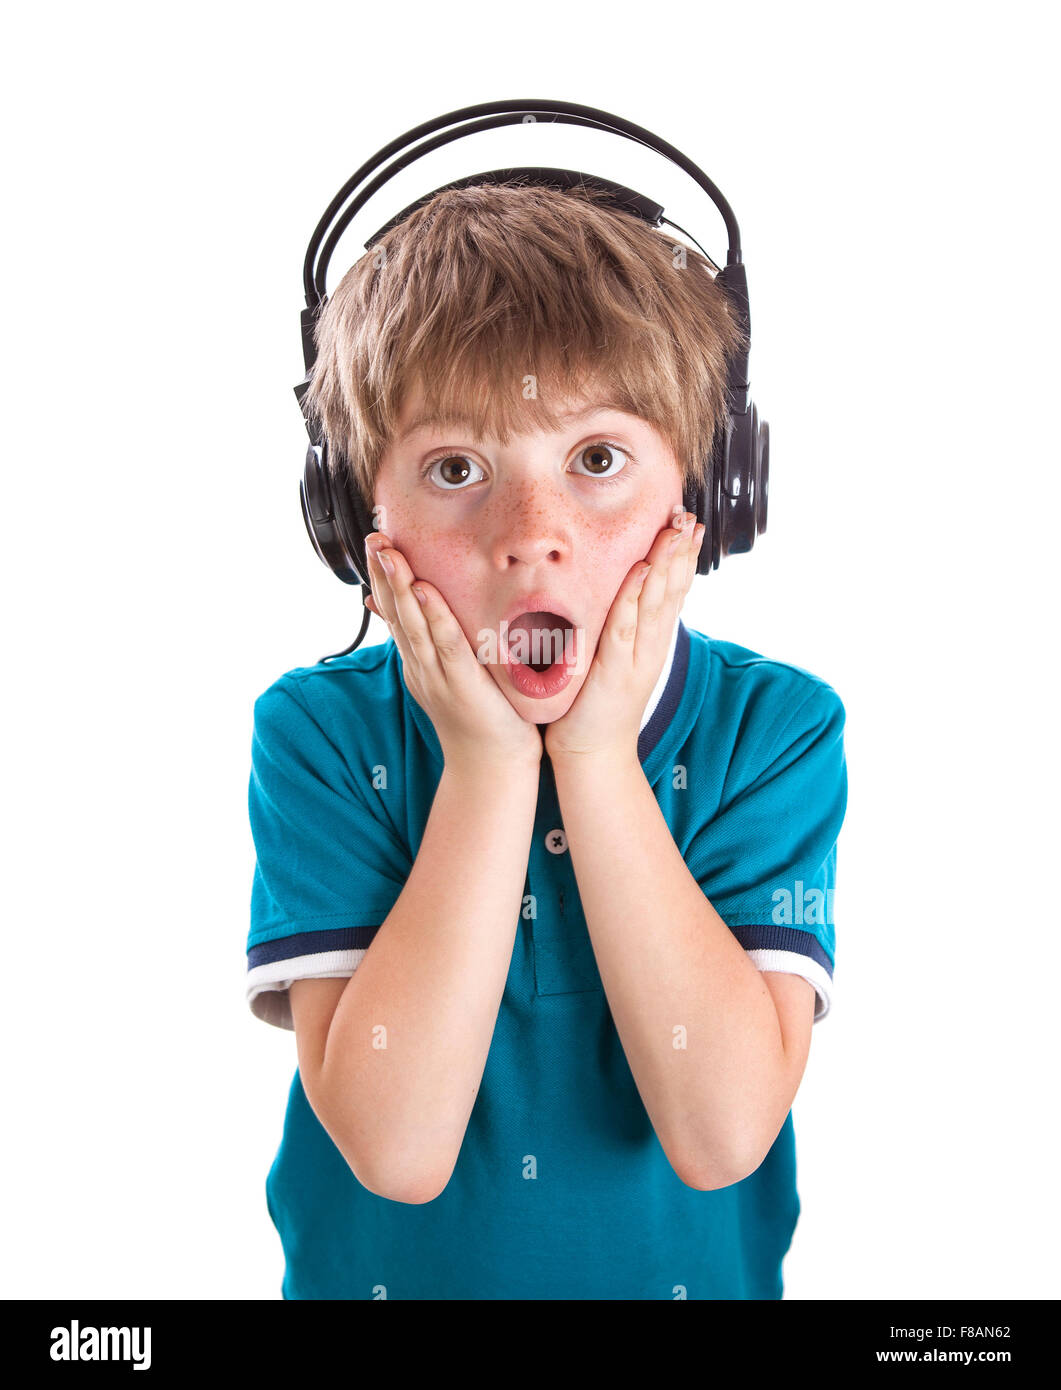 Retrato de joven escuchando música en auriculares contra el fondo blanco. Foto de stock